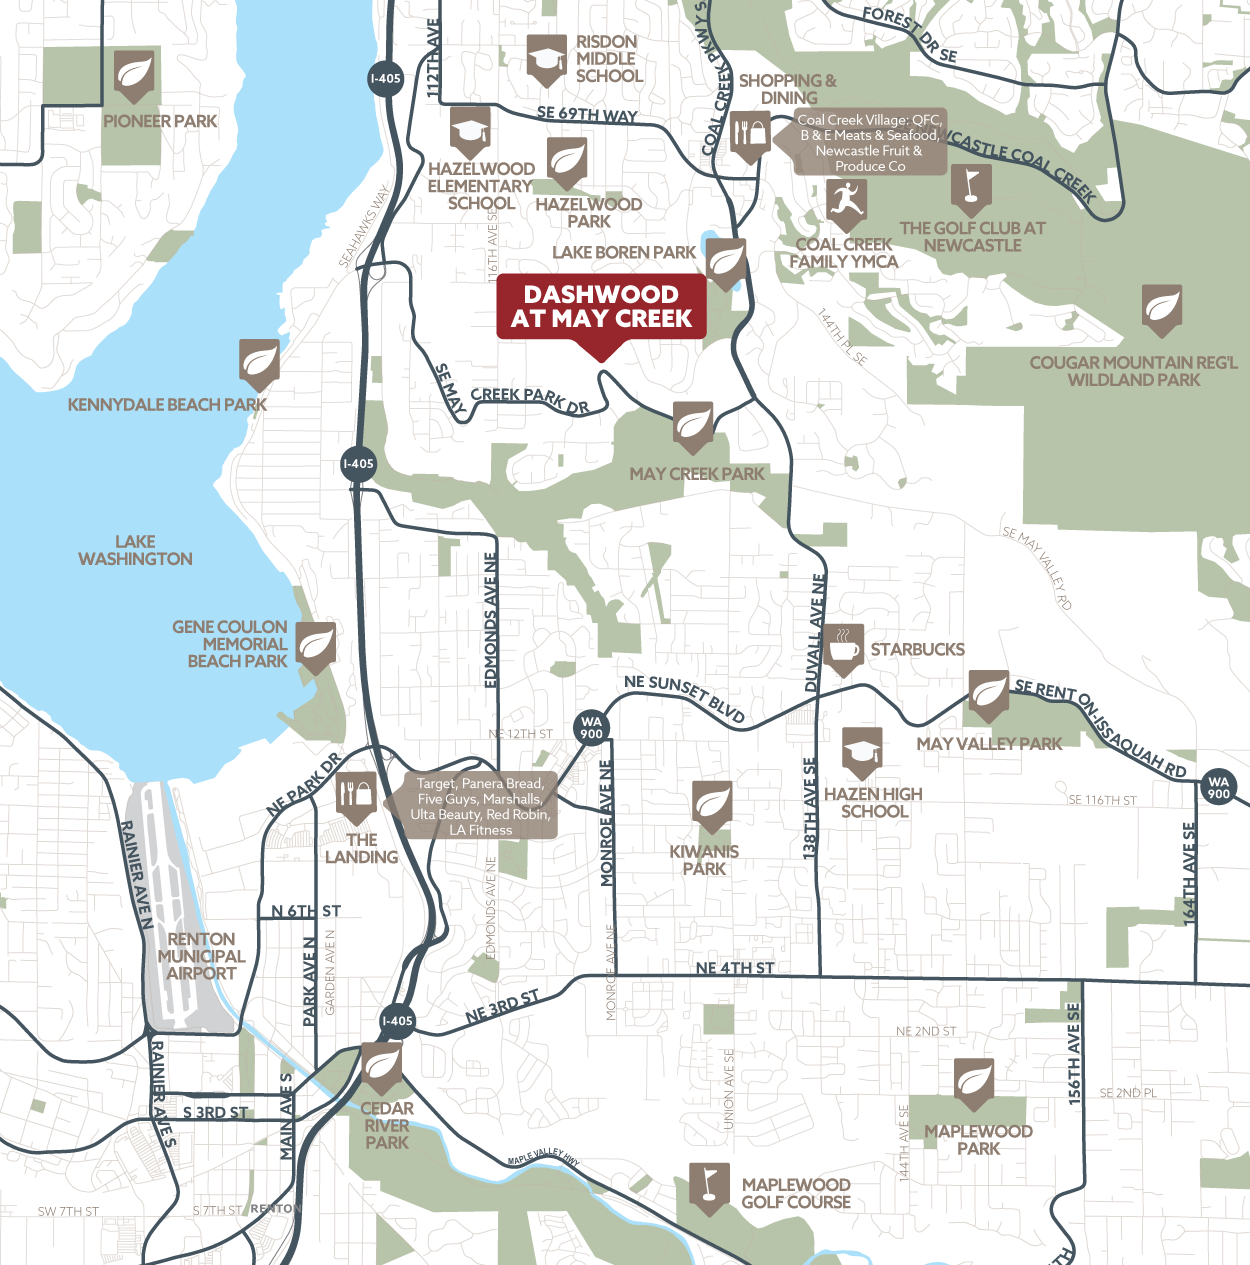 Dashwood at May Creek amenity map